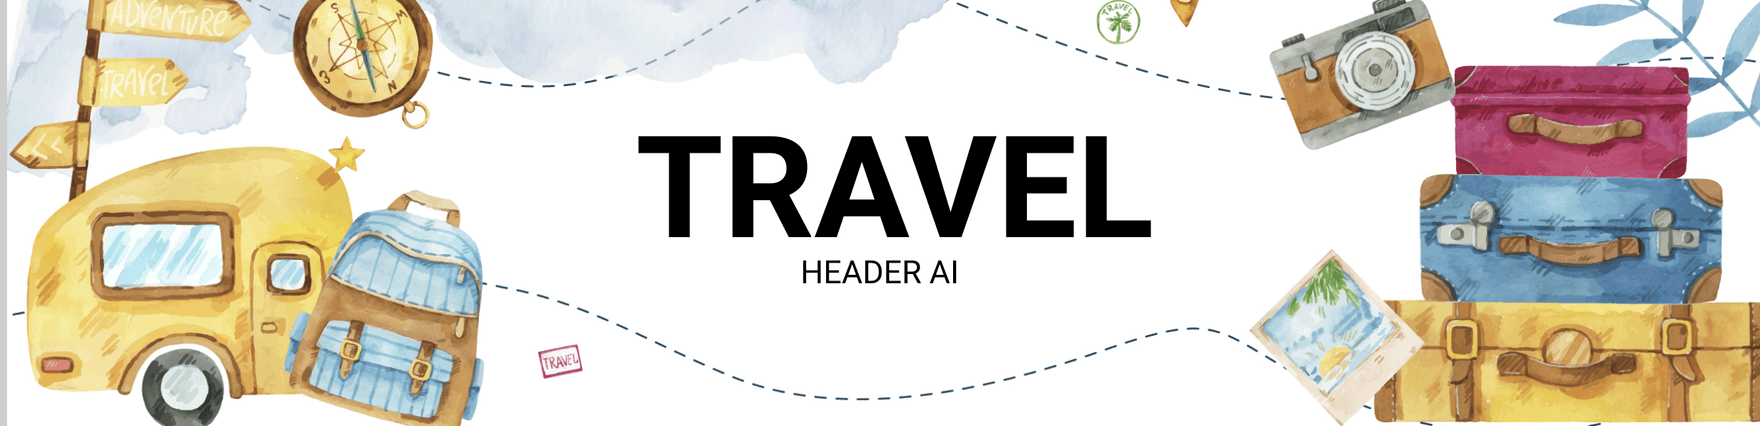 Travel Header AI Template